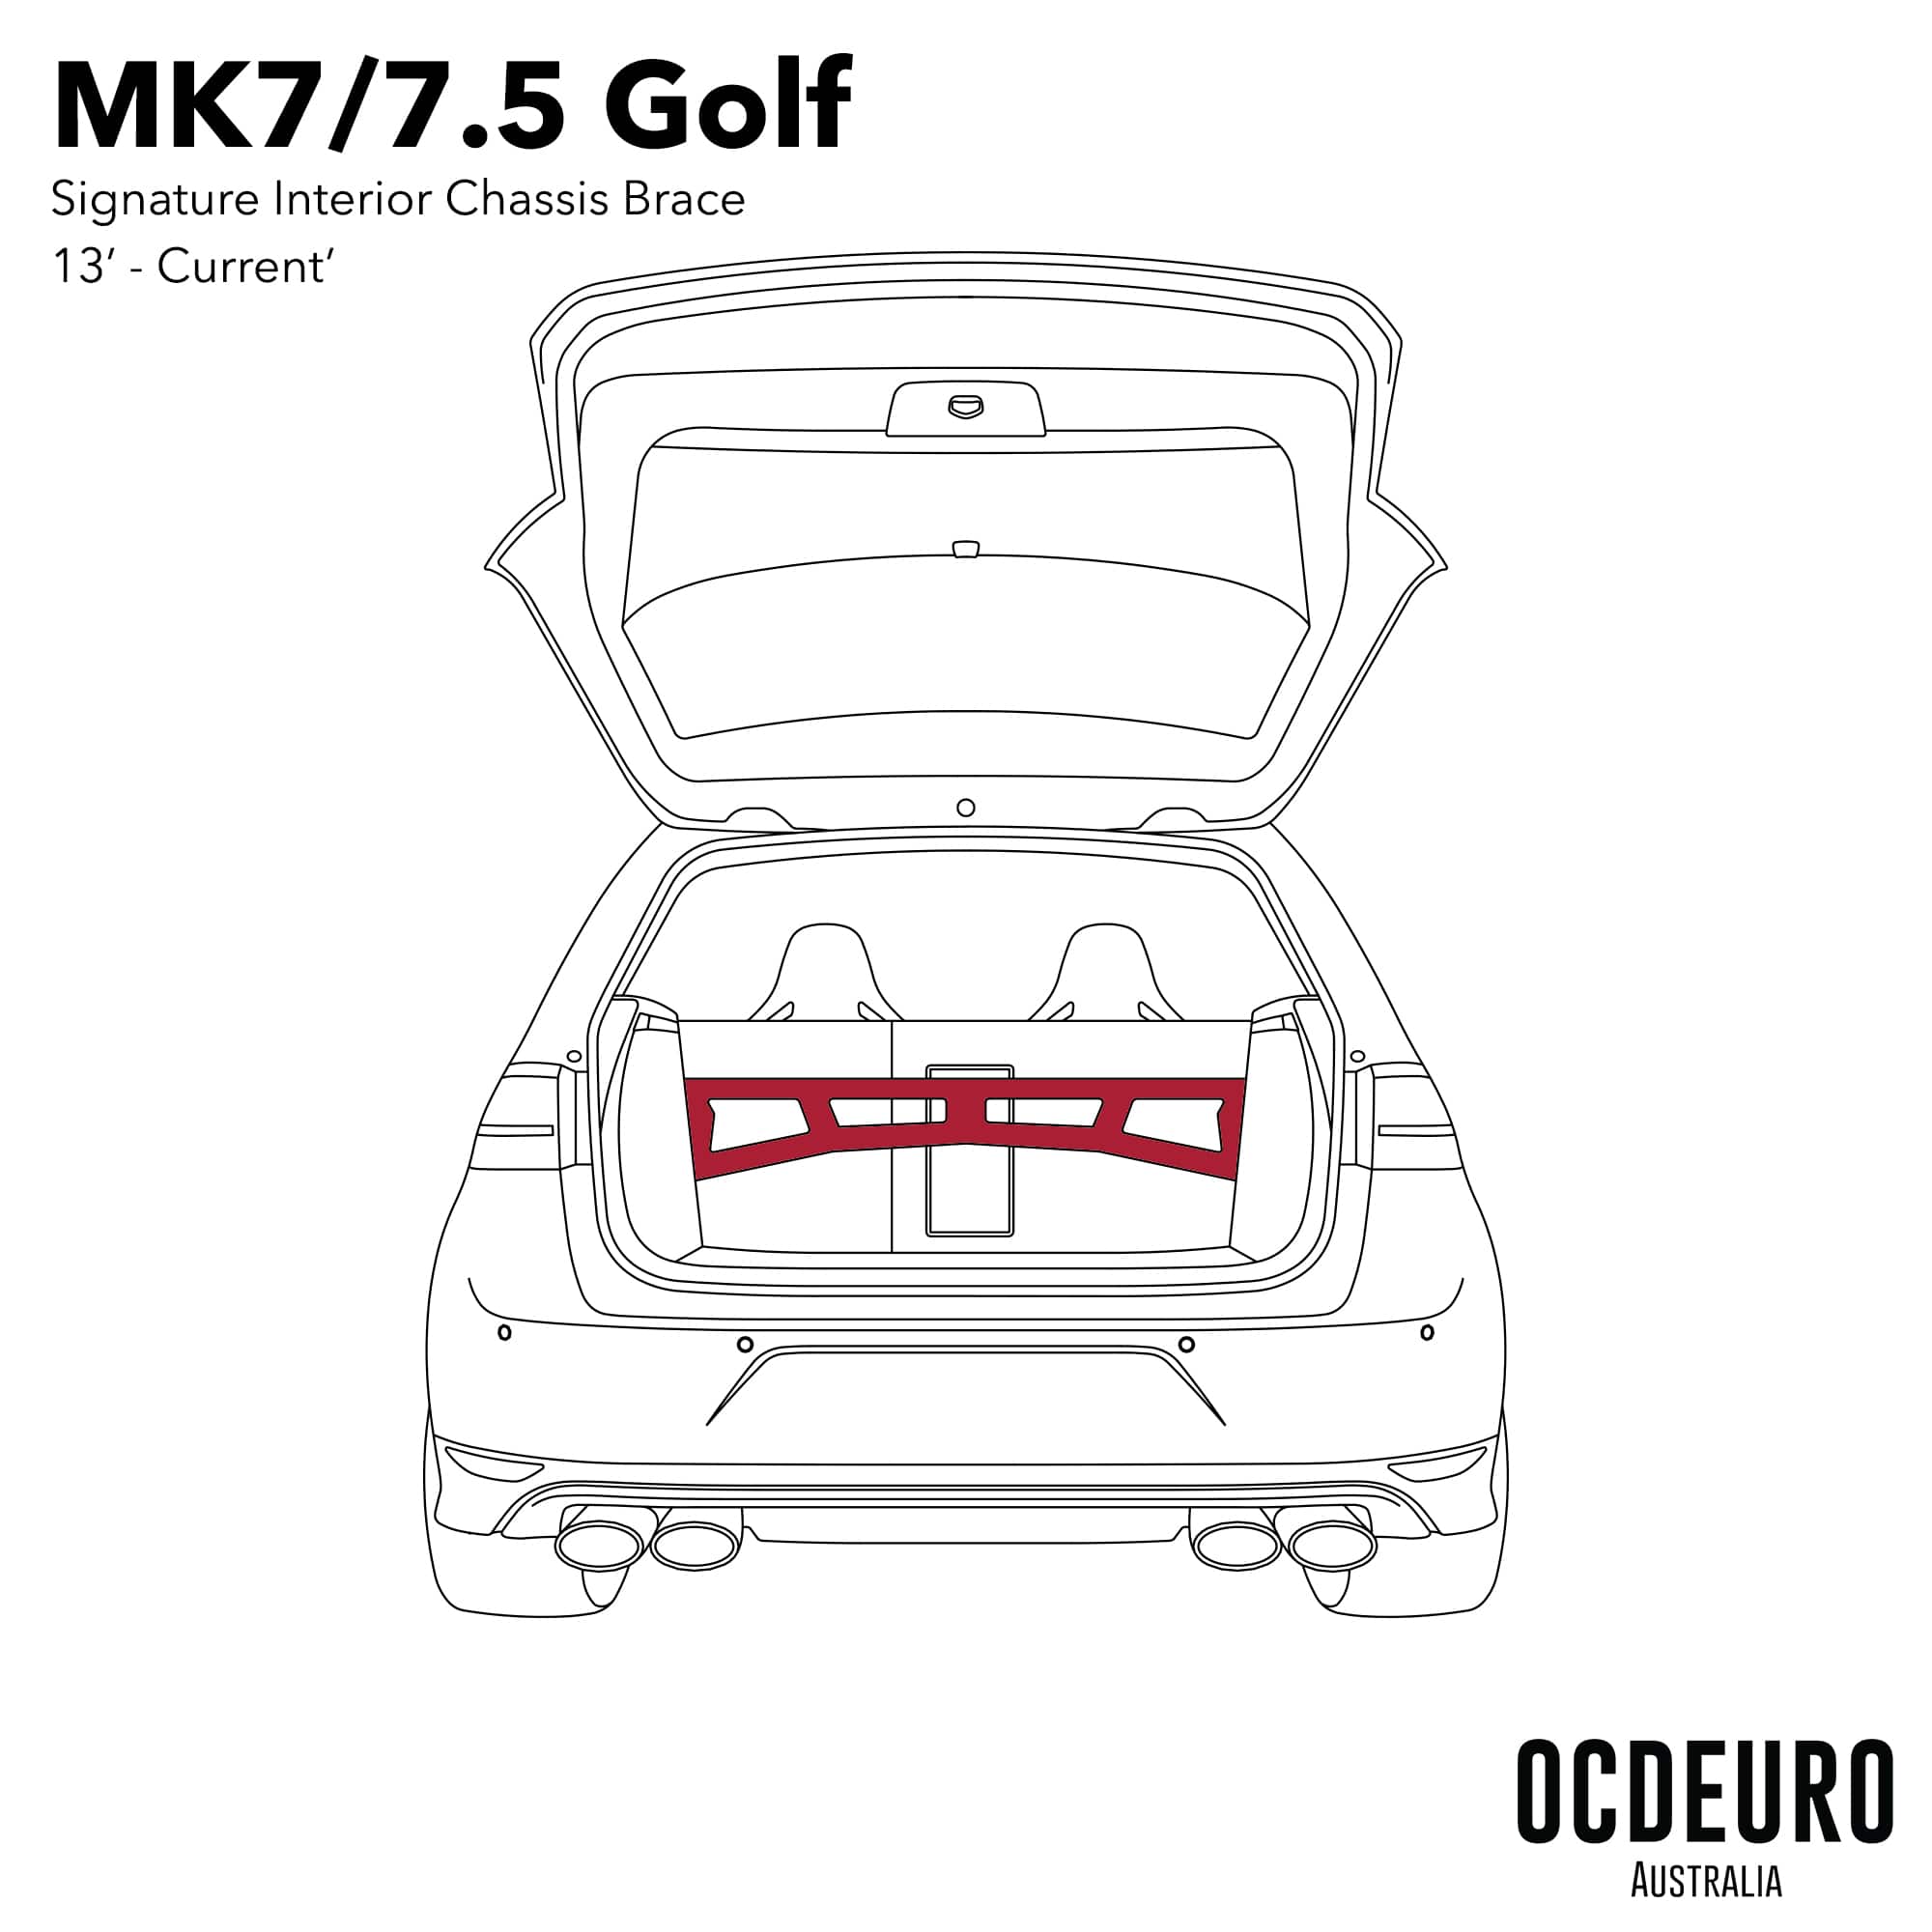 OCDEURO VW Golf MK7 Rear Brace